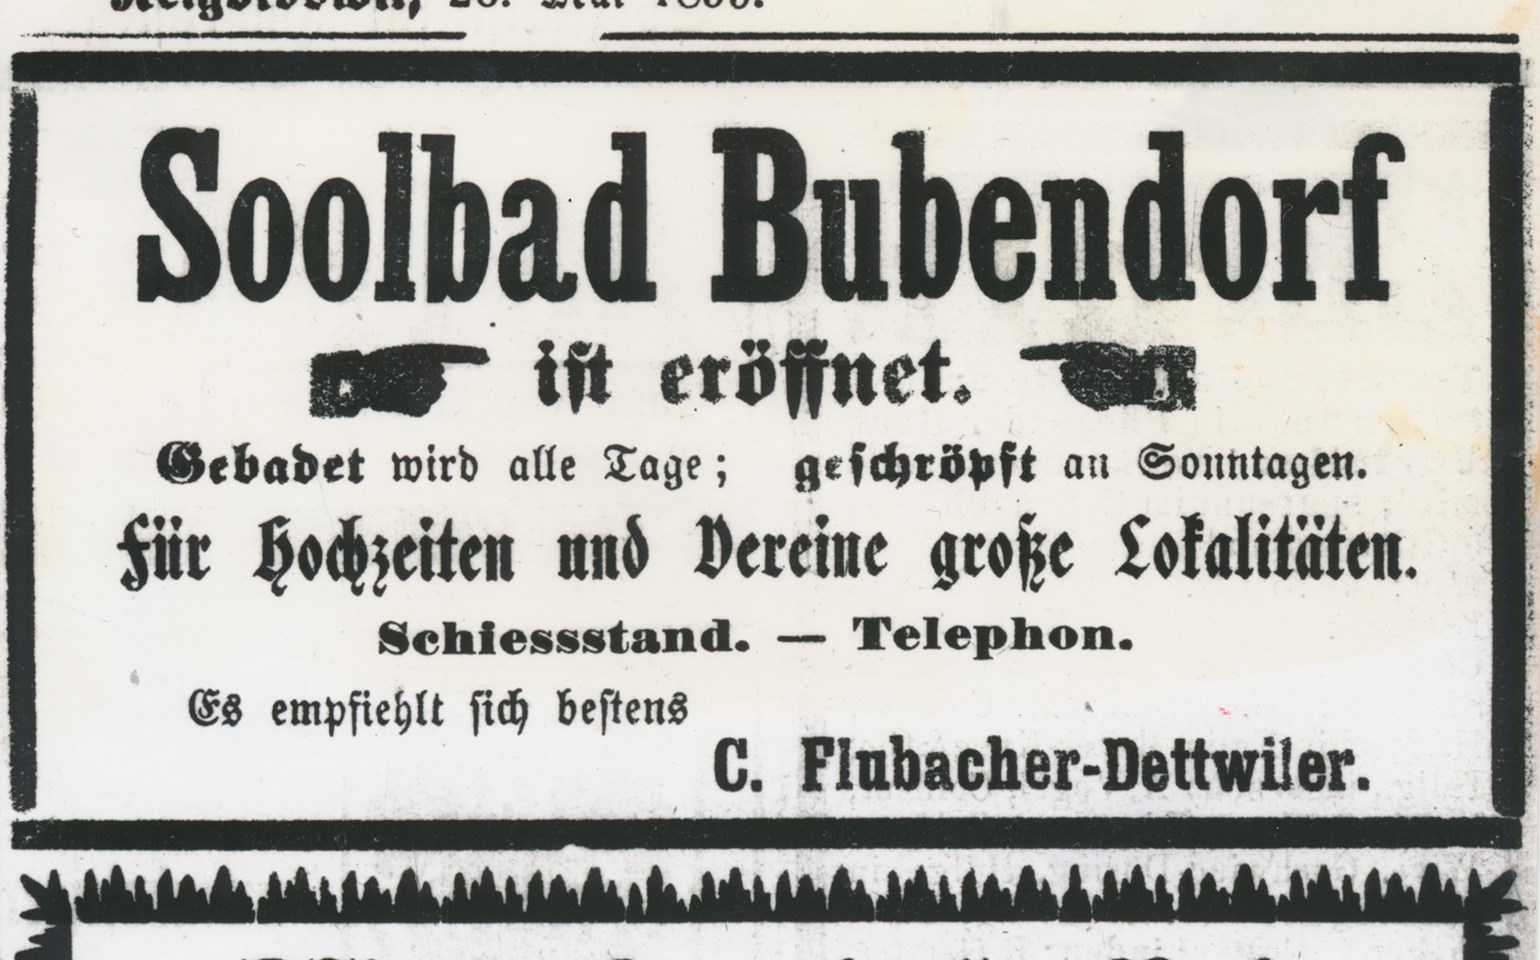 Die Geschichte des Bad Bubendorf Hotel